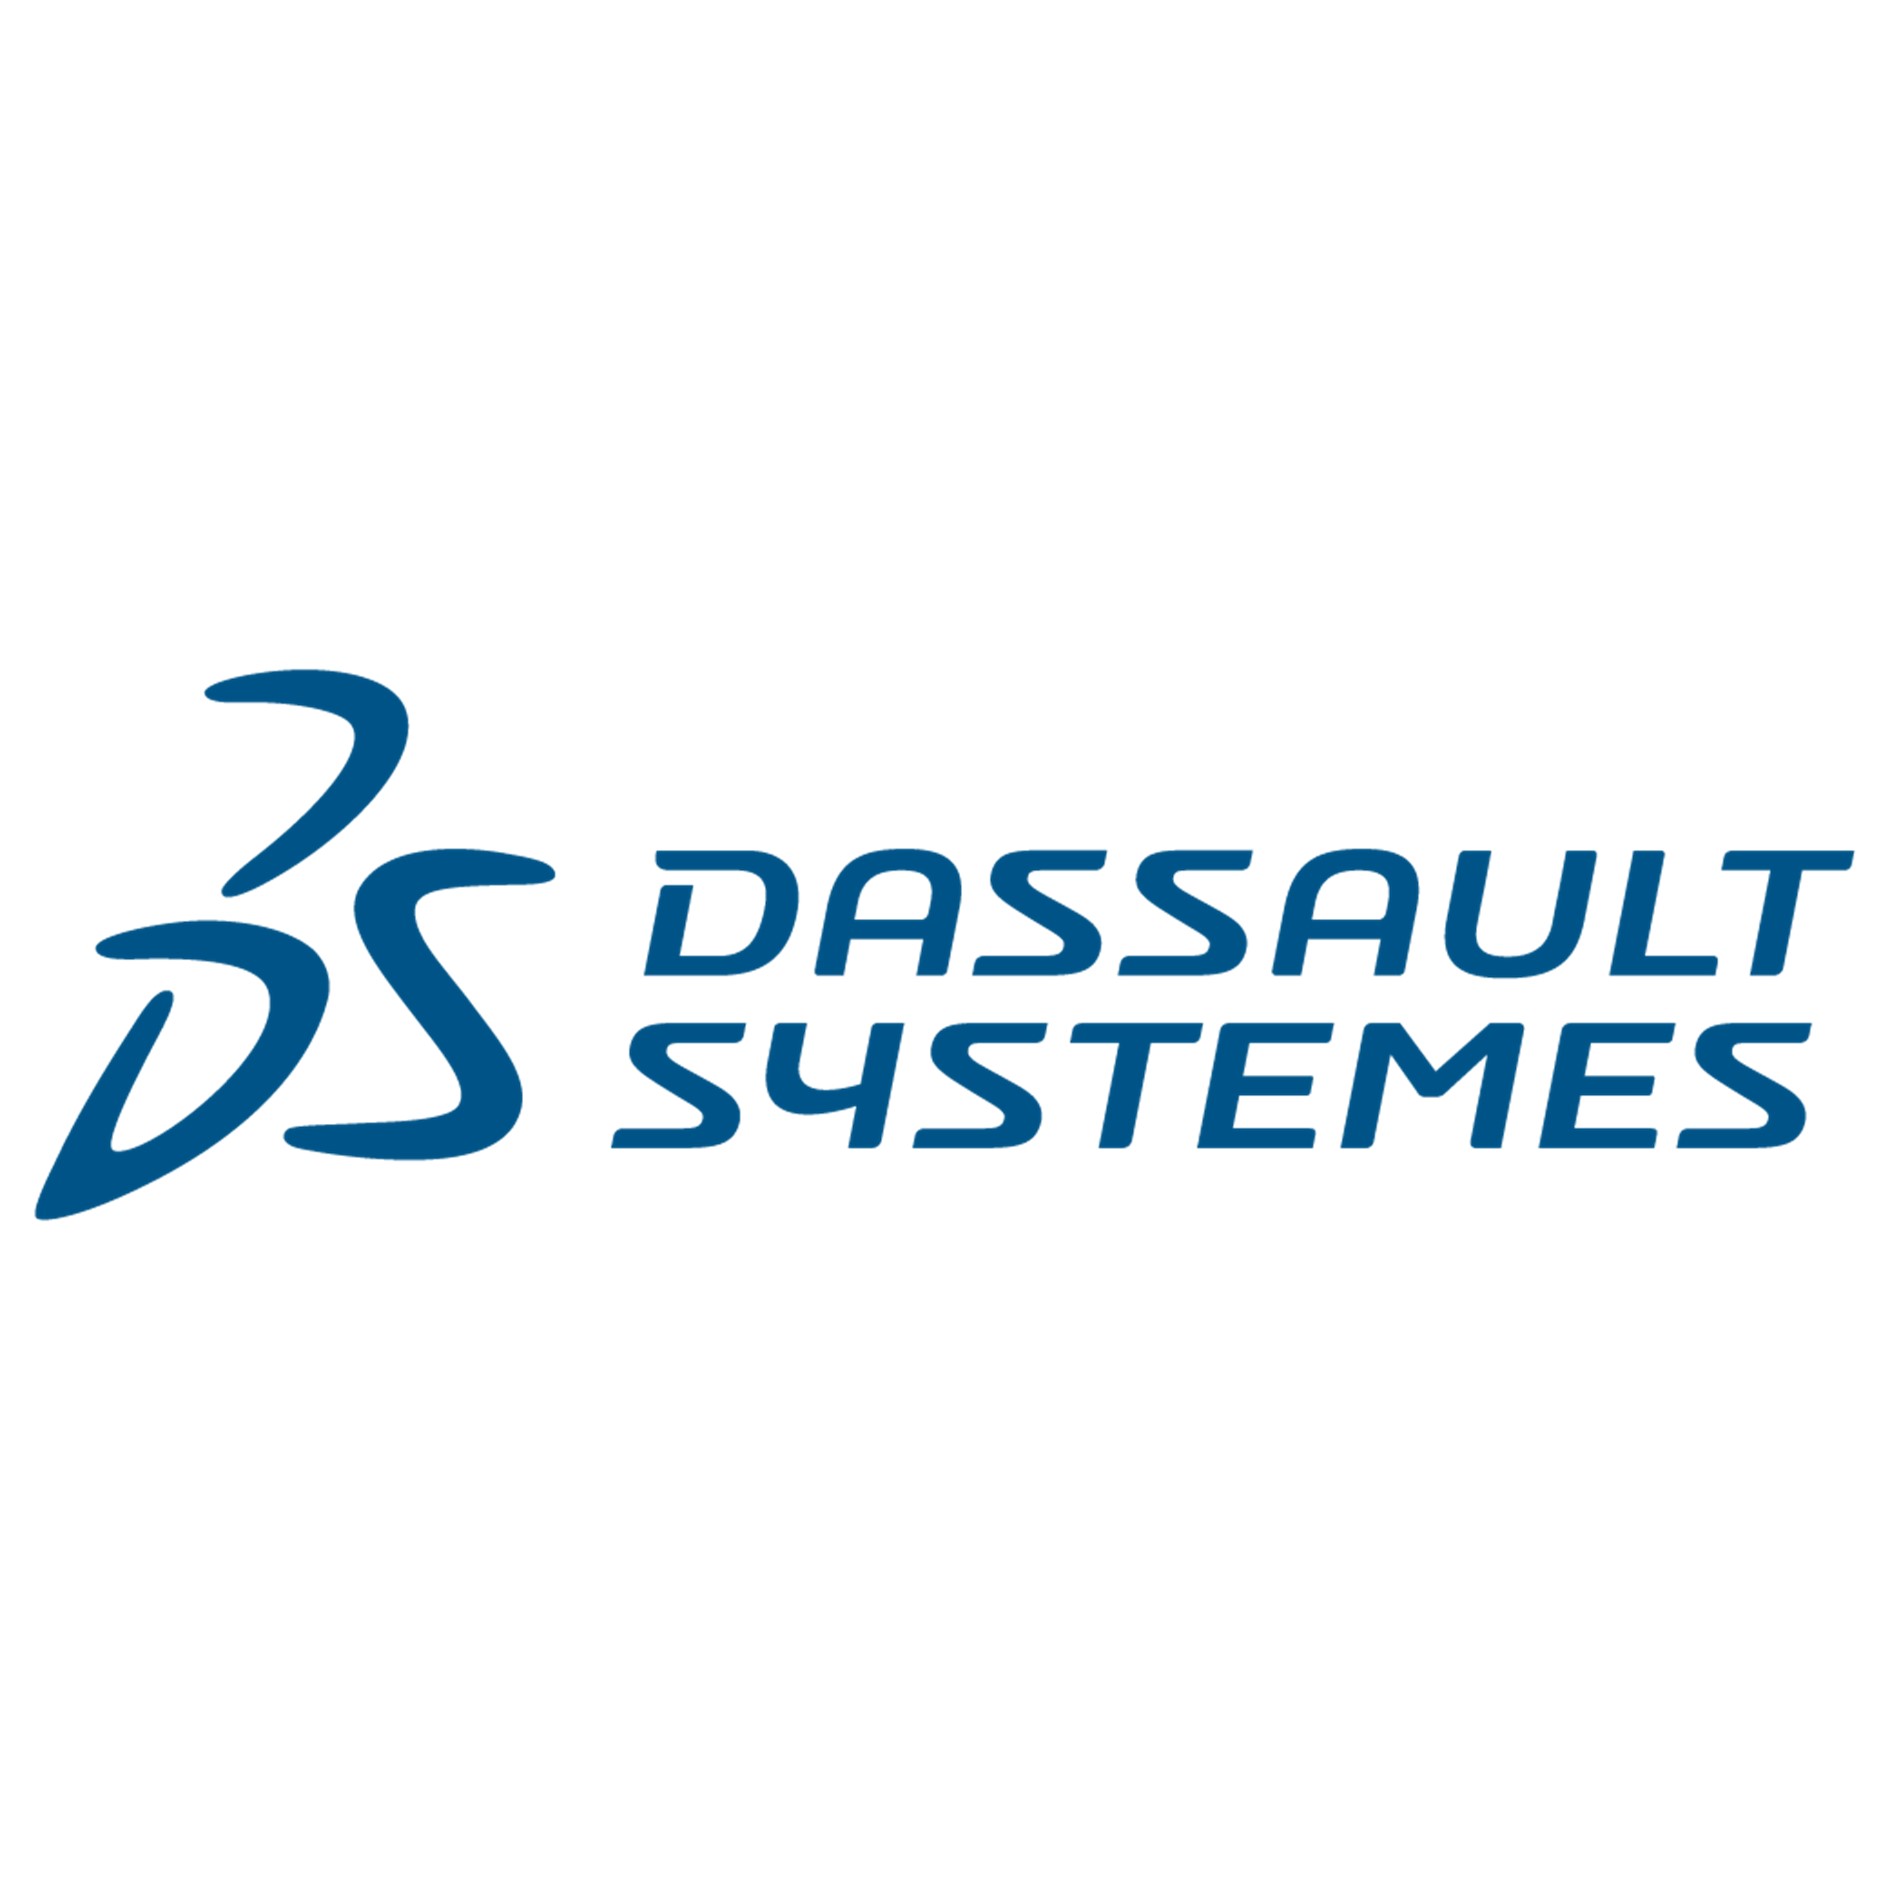 Dassault Systèmes célèbre l’imagination, l’innovation et les communautés d’utilisateurs qui façonnent l’avenir de la conception et de la fabrication